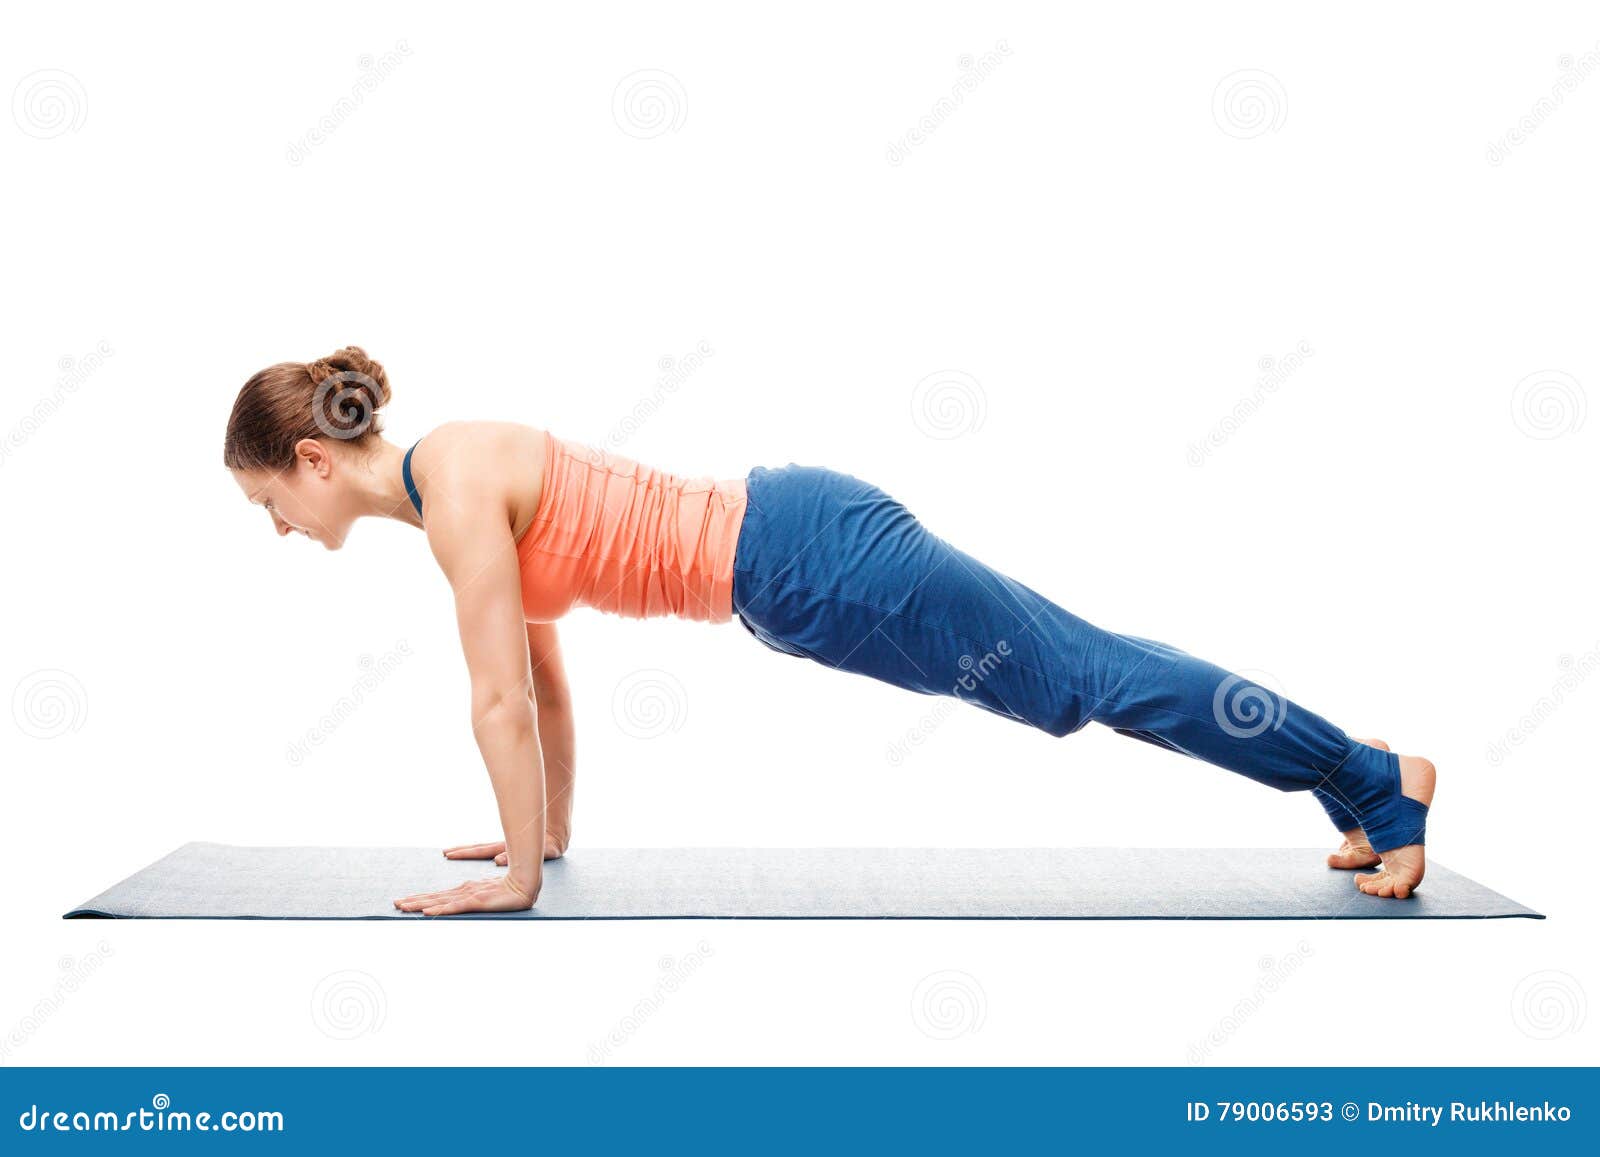 Woman Doing Yoga Asana Utthita Chaturanga Dandasana Or Phalakasana Stock Image Image Of Training Plank 79006593